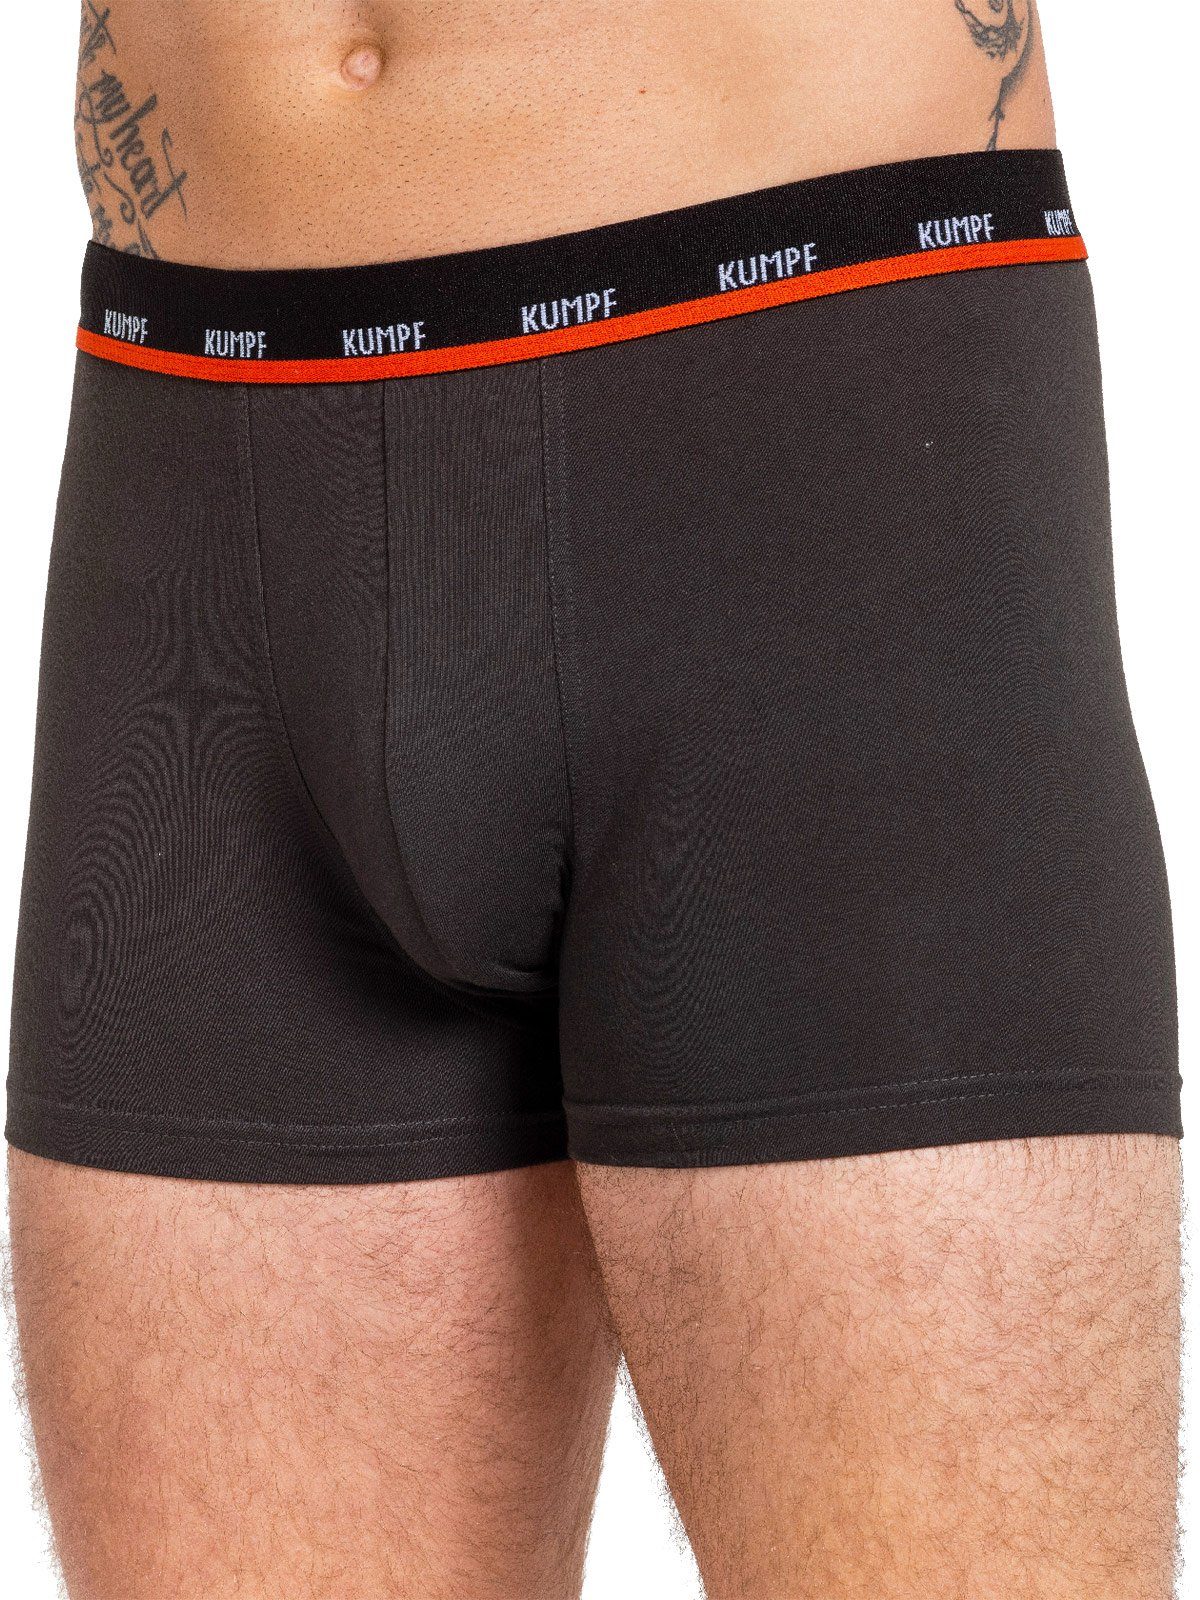 Herren Stretch Retro Pants schwarz-grau KUMPF Pack Materialmix 3-St) Pants Cotton 3er (Packung, Gummibund mit